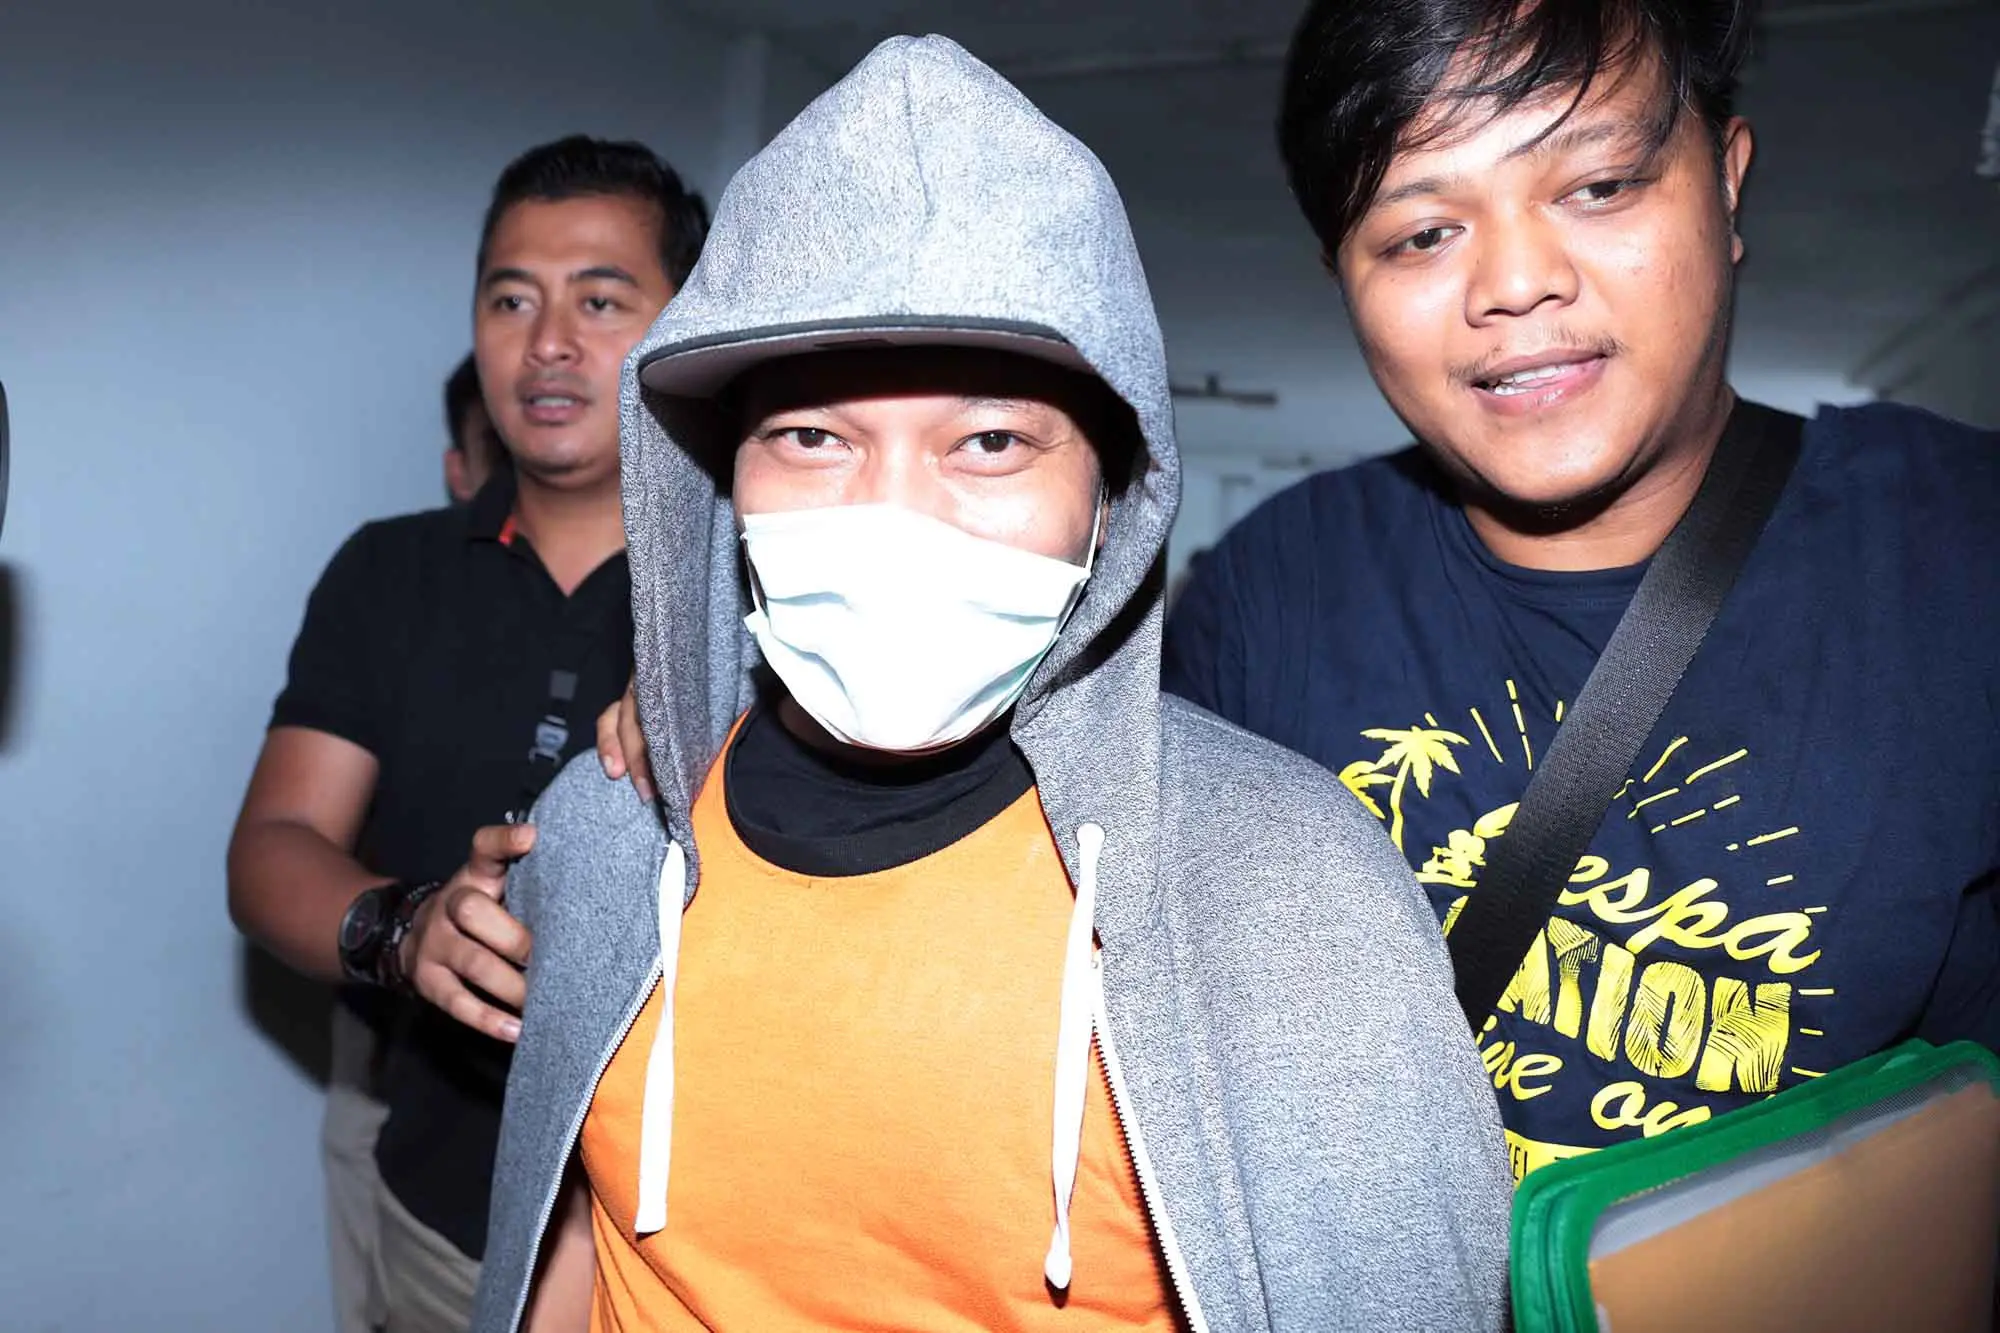 Rapper Iwa K kembali mendatangi kantor BNN guna menjalani pemeriksaan lanjutan assesment, Rabu (3/5/2017) siang. Sebelumnya, rapper ini juga menjalani pemeriksaan di kantor BNN terkait narkoba. (Deki Prayoga/Bintang.com)